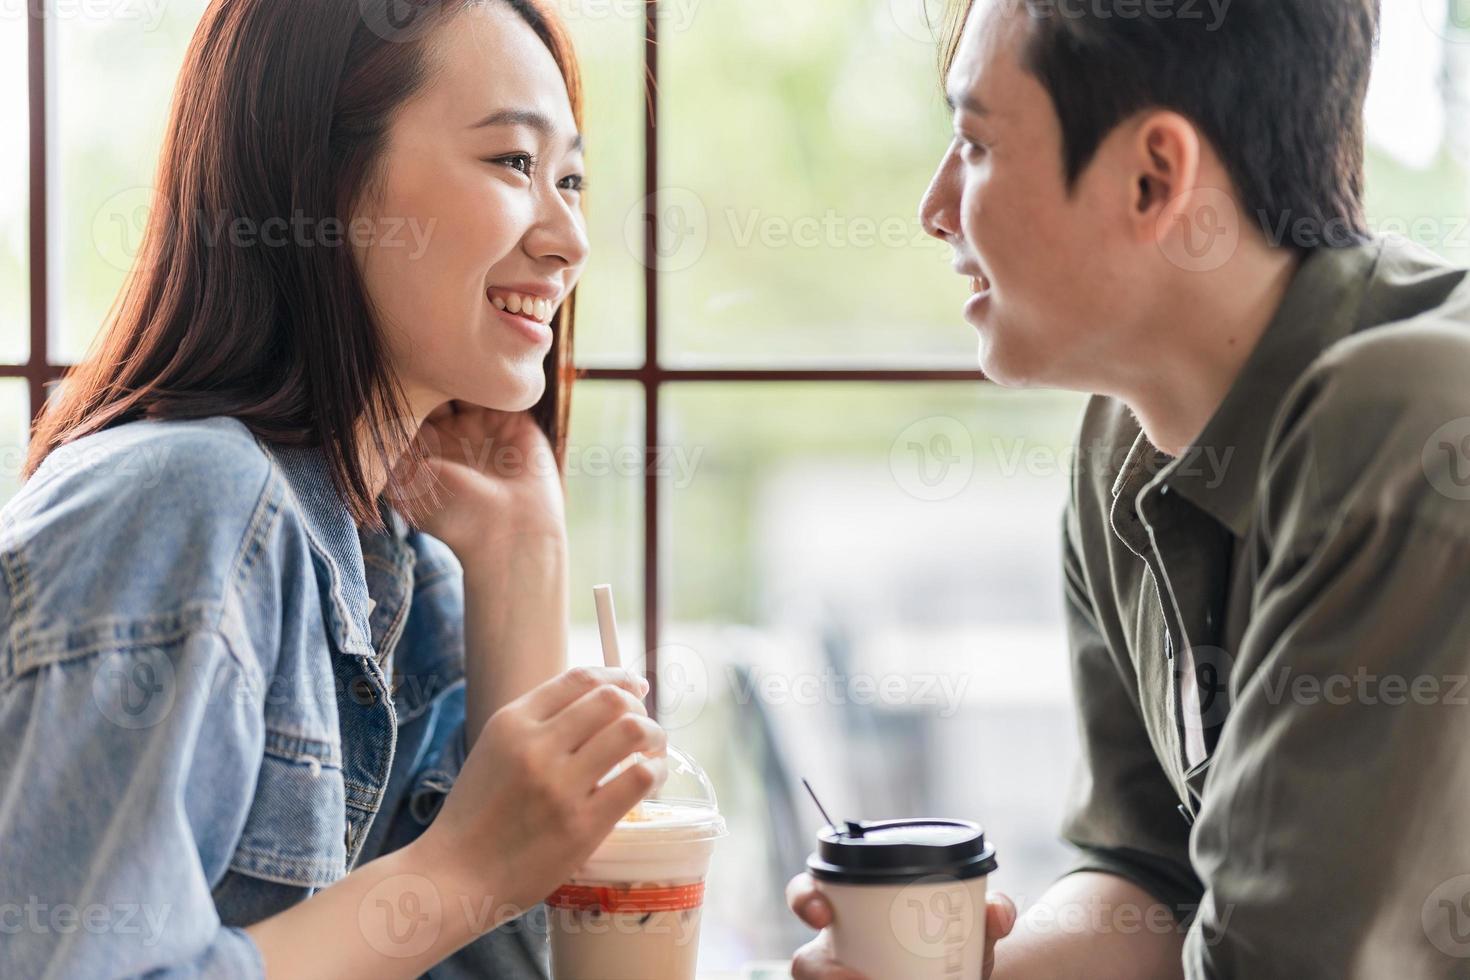 jong Aziatisch stel dating bij coffeeshop foto